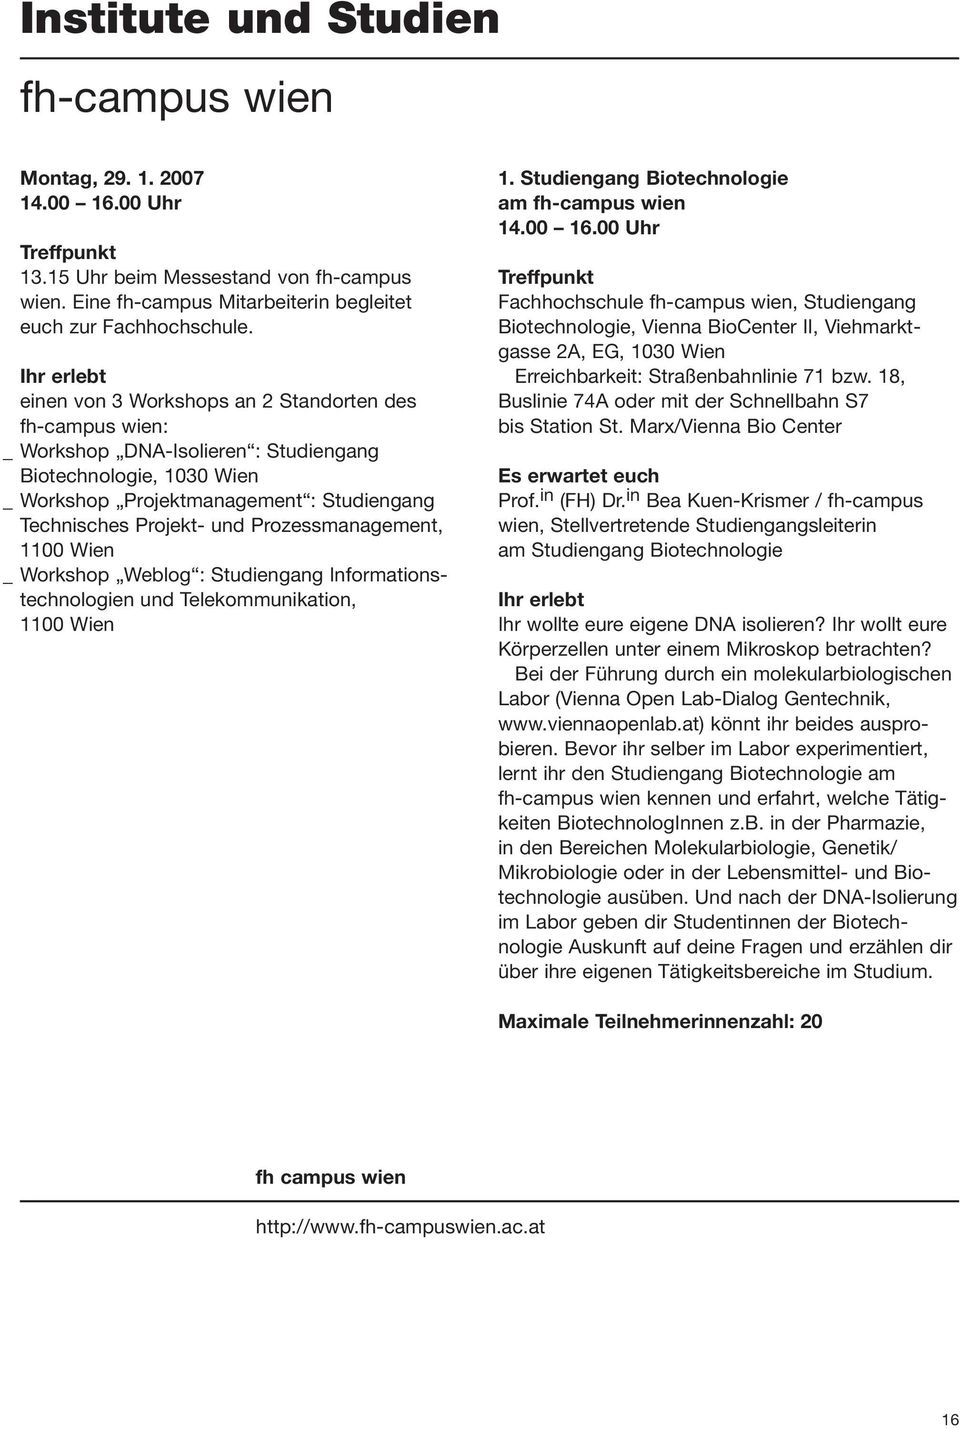 Prozessmanagement, 1100 Wien _ Workshop Weblog : Studiengang Informationstechnologien und Telekommunikation, 1100 Wien 1. Studiengang Biotechnologie am fh-campus wien 14.00 16.